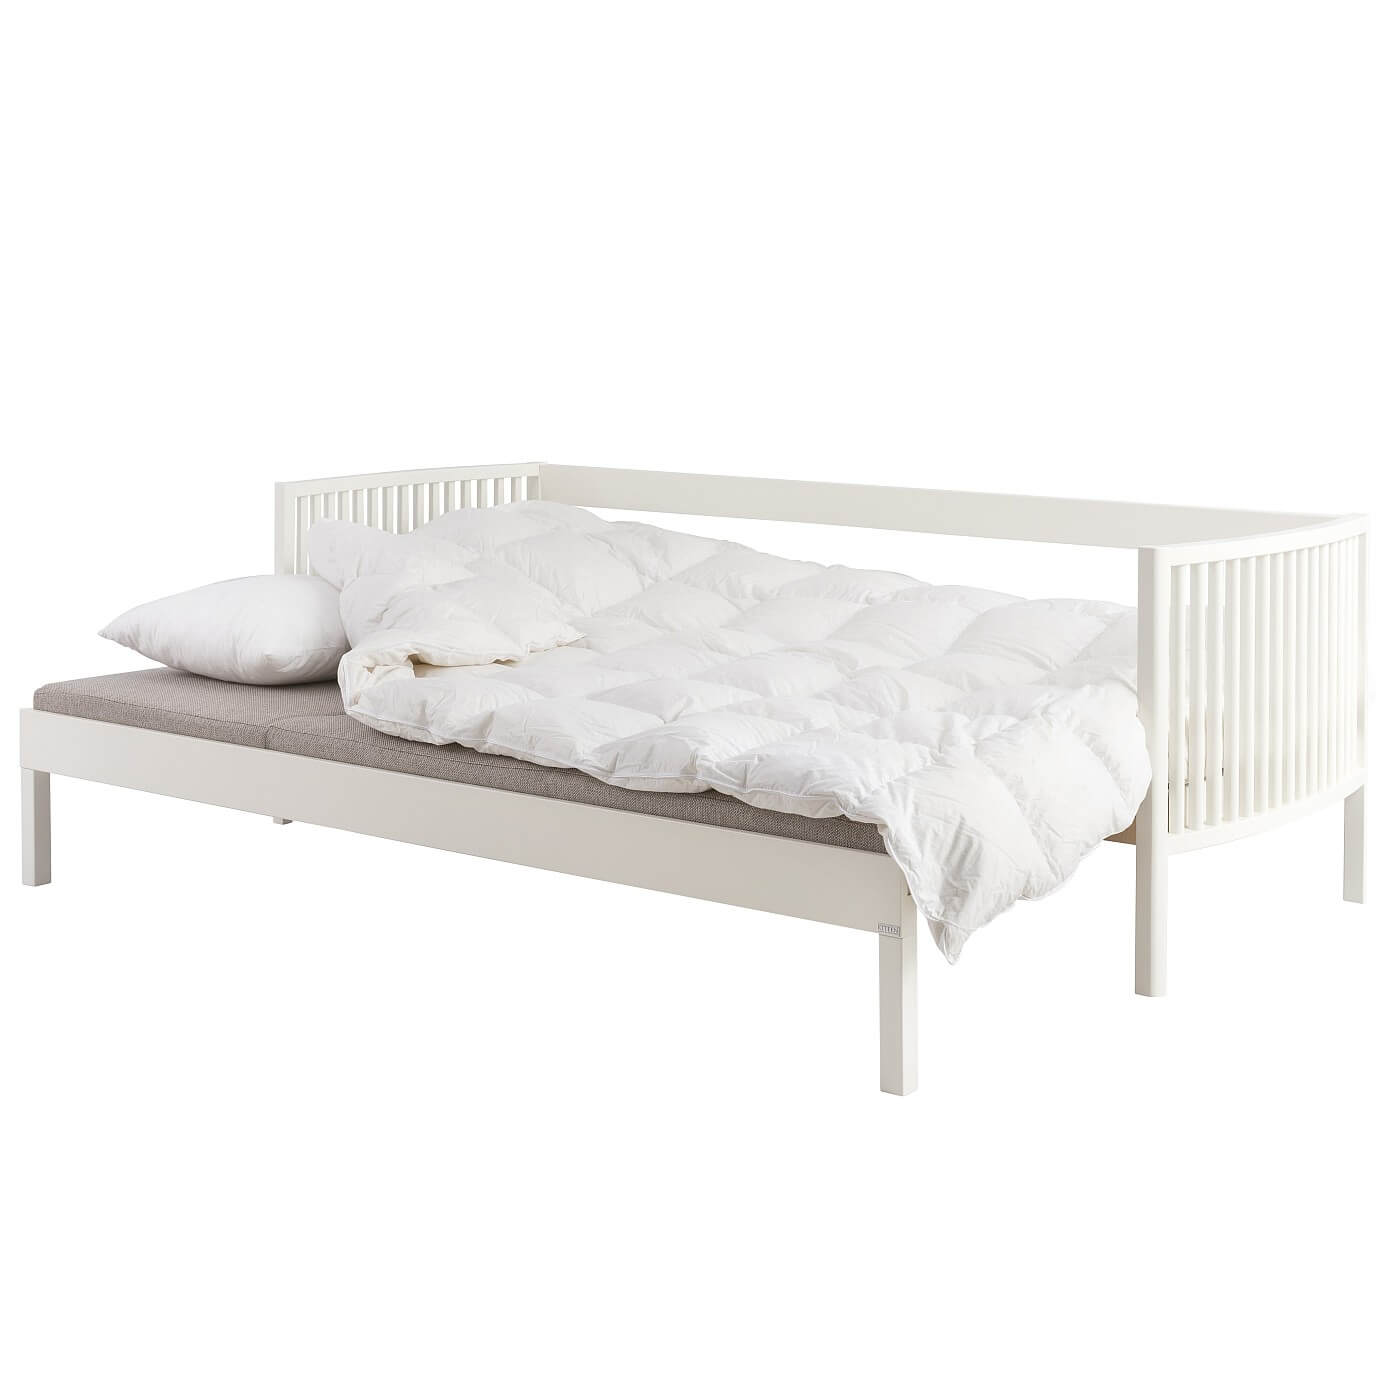 Sofa design AARRE białe drewno. Rozłożona nowoczesna sofa z drewna brzozy skandynawskiej kolor biały z beżowym materacem i pościelą